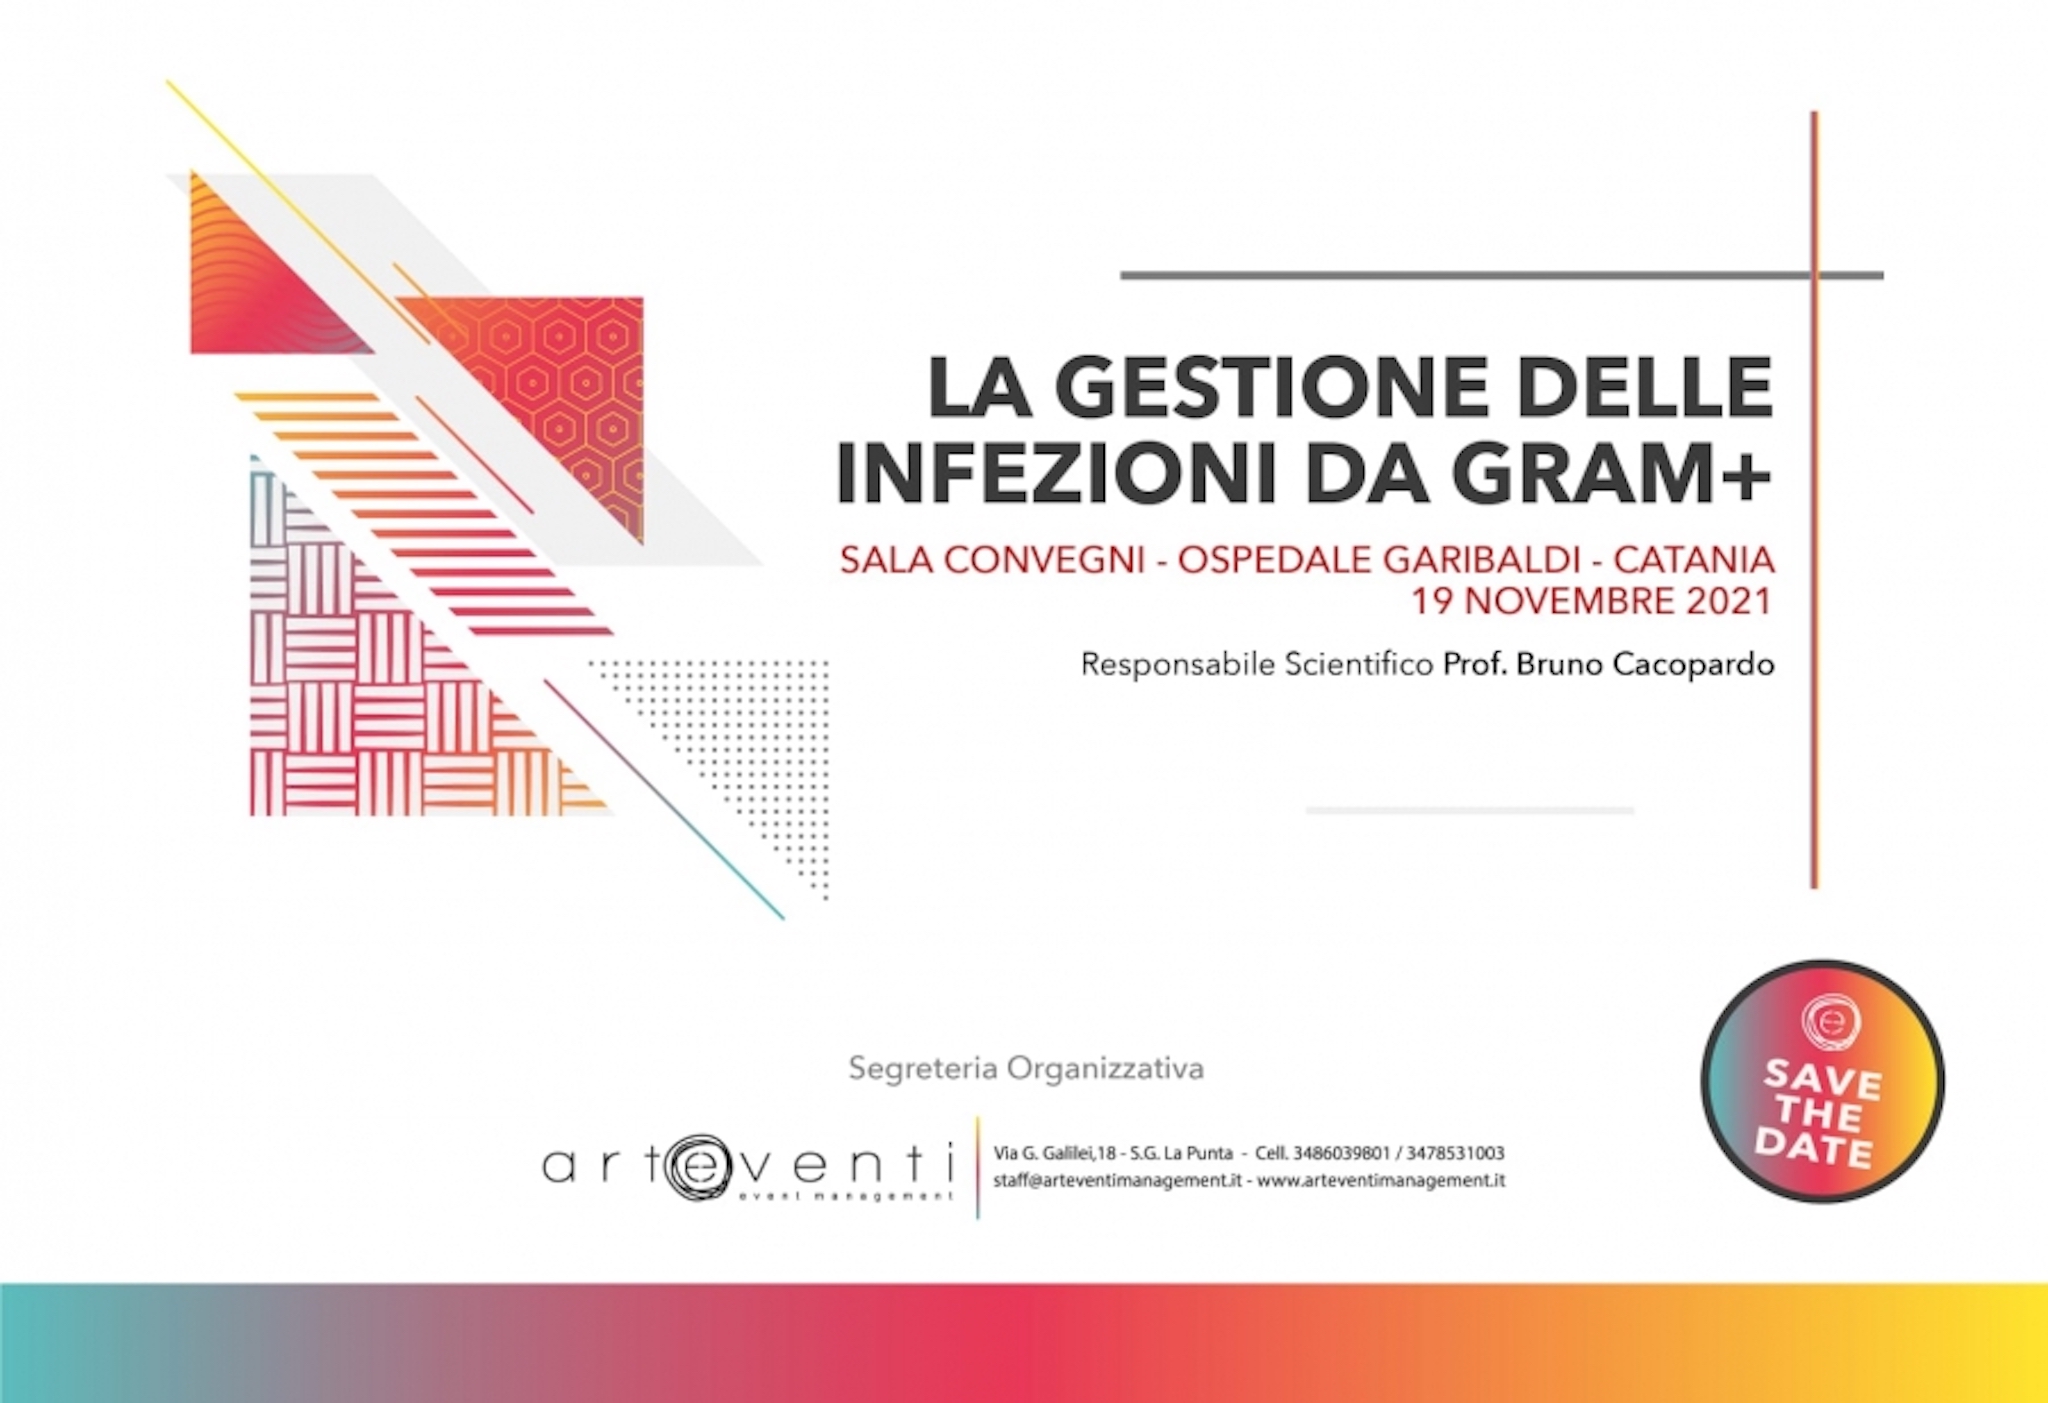 La gestione delle infezioni da gram+ - Ospedale Garibaldi